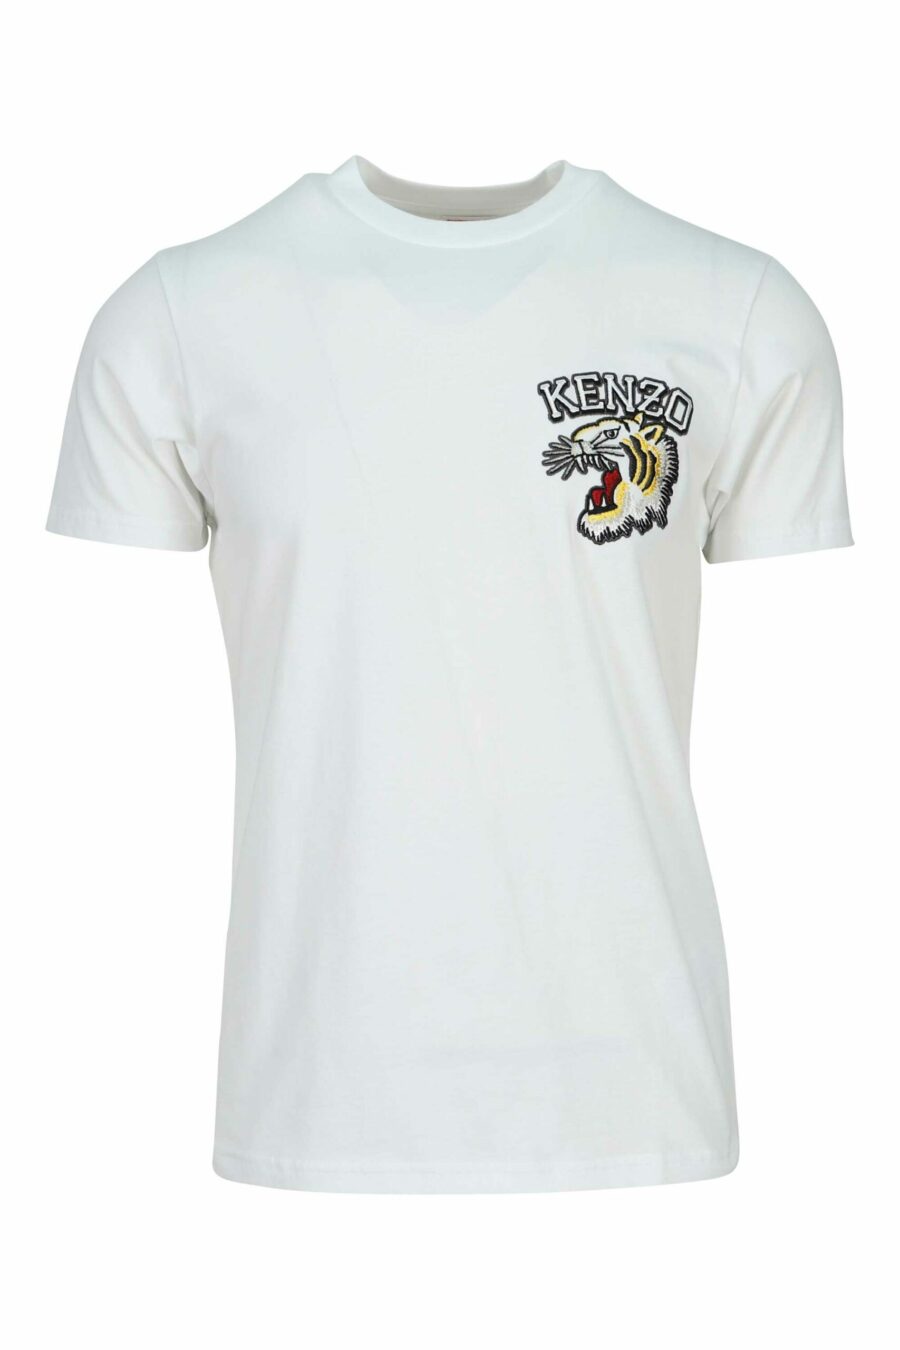 Camiseta blanca "slim" con minilogo tigre - 3612230625013 scaled